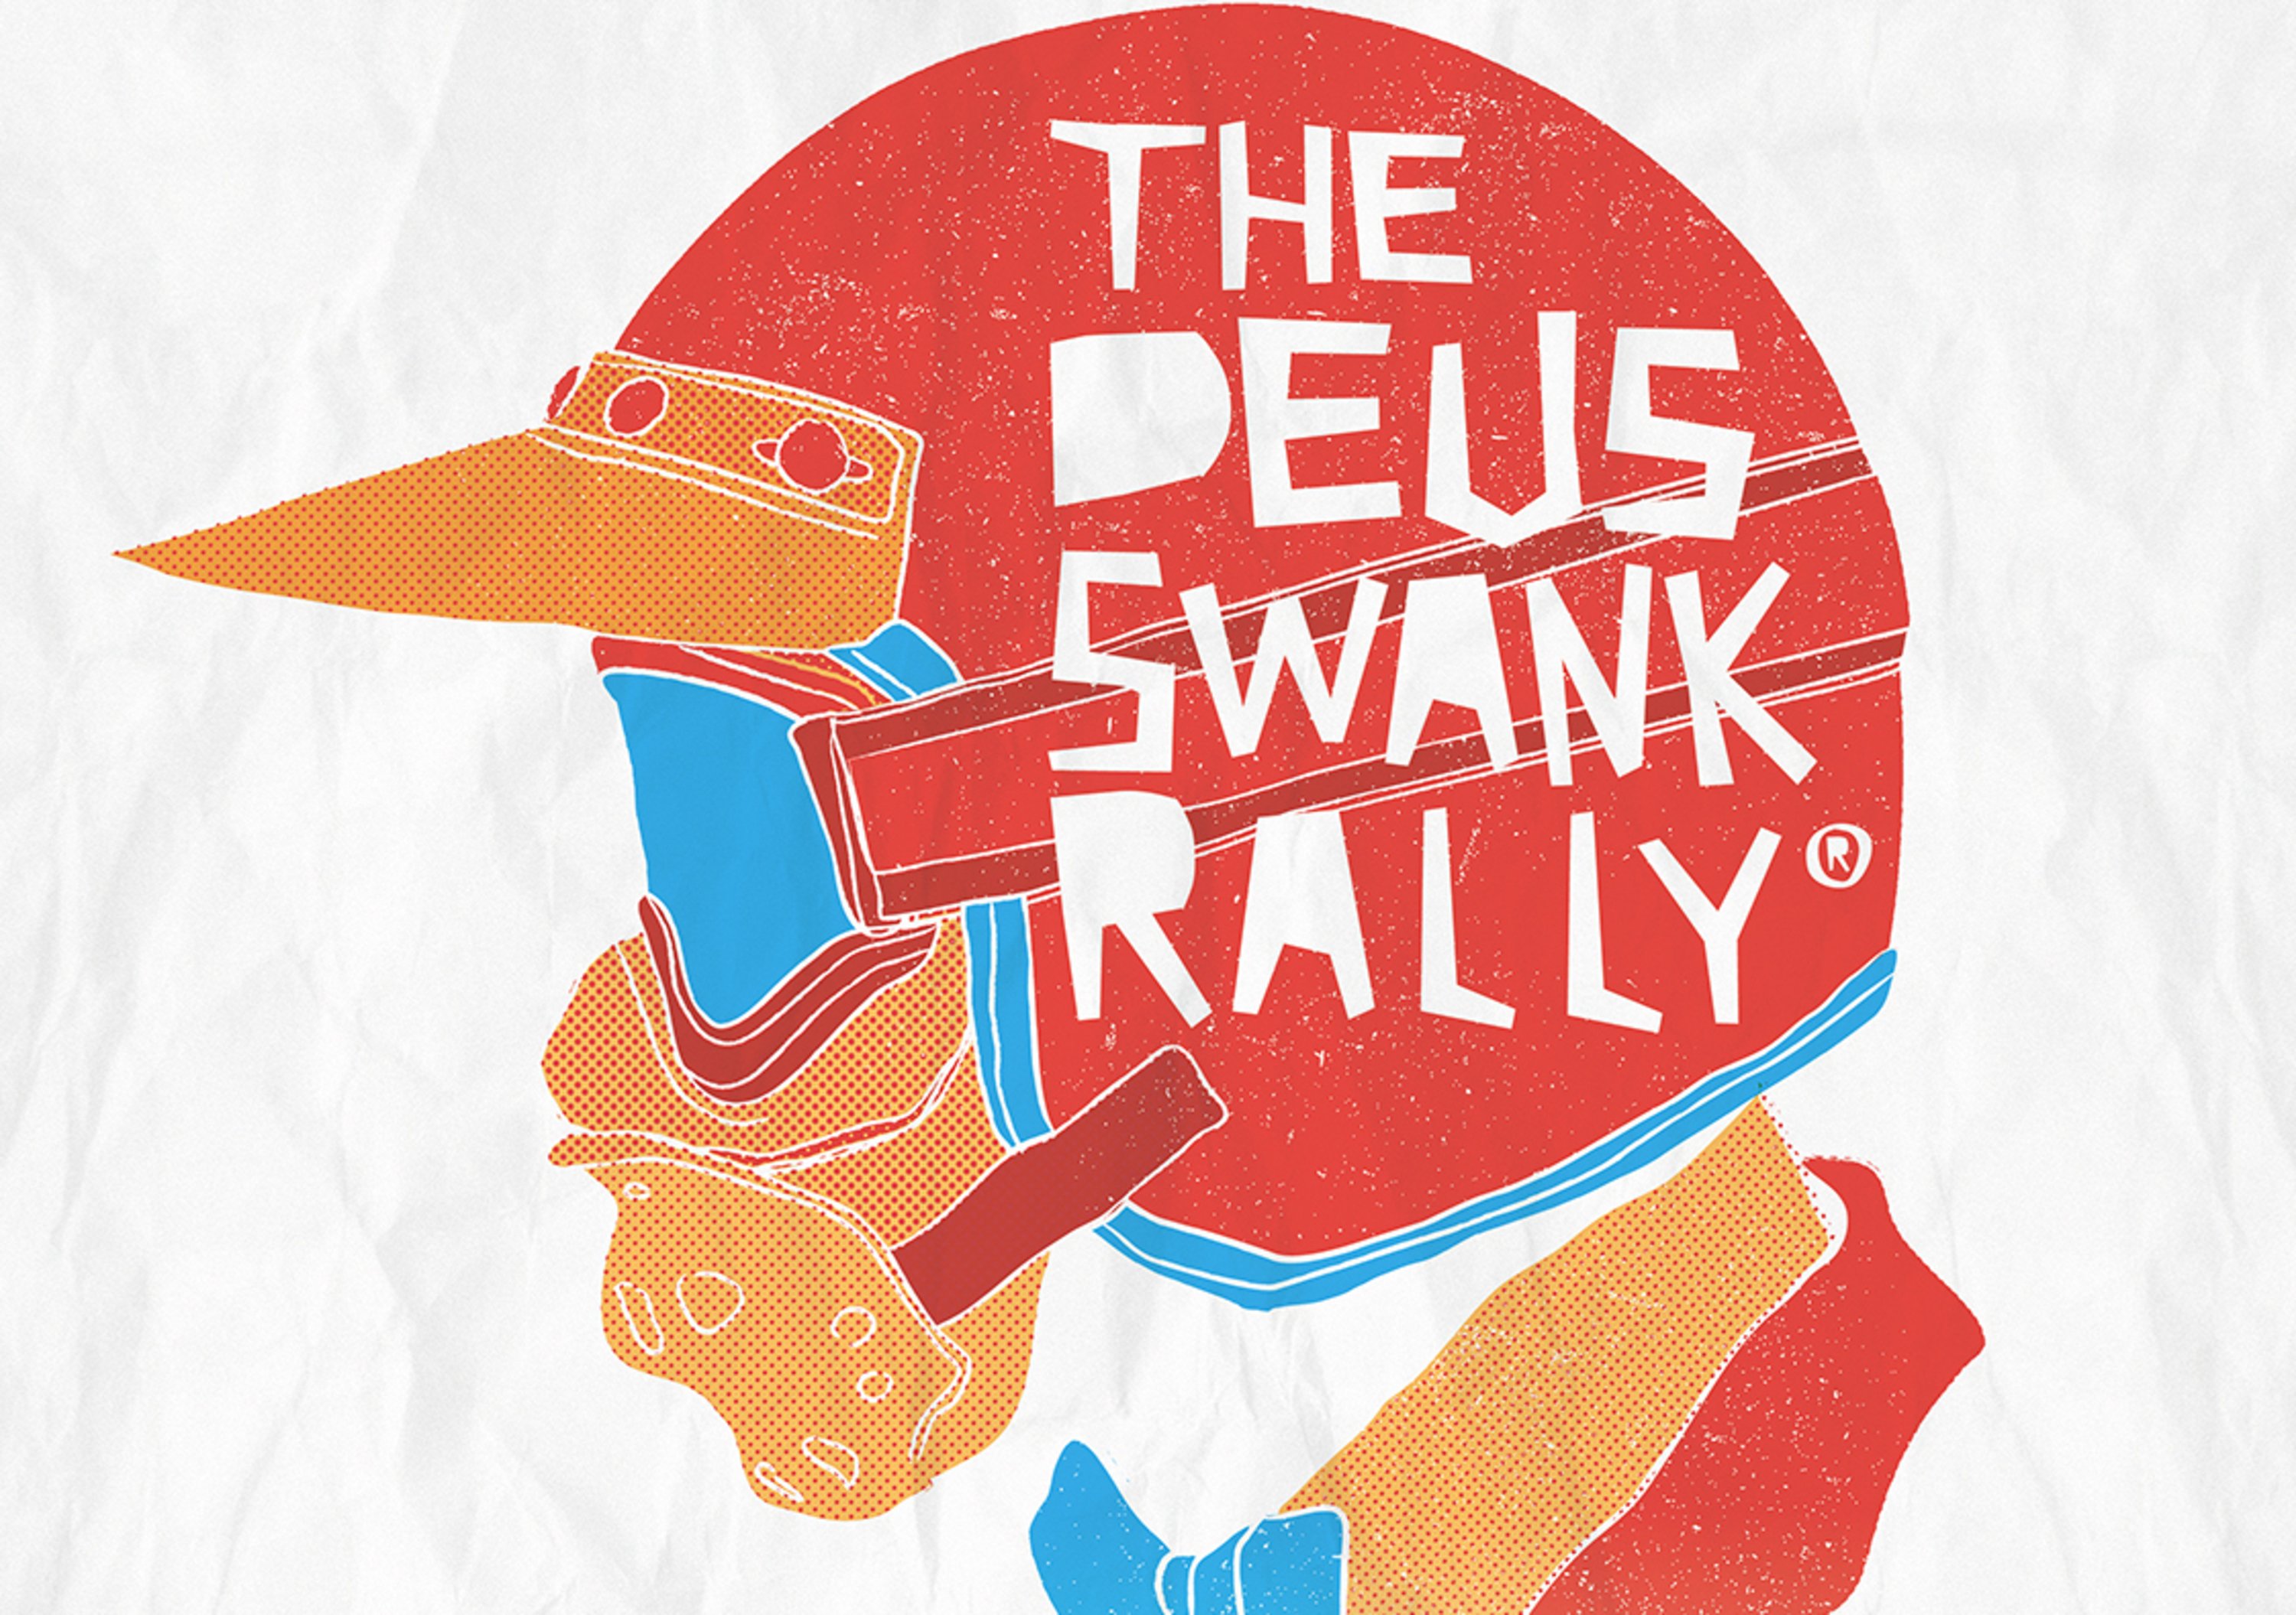 &ldquo;The Deus Swank Rally&rdquo;, quattro date per moto vintage da enduro